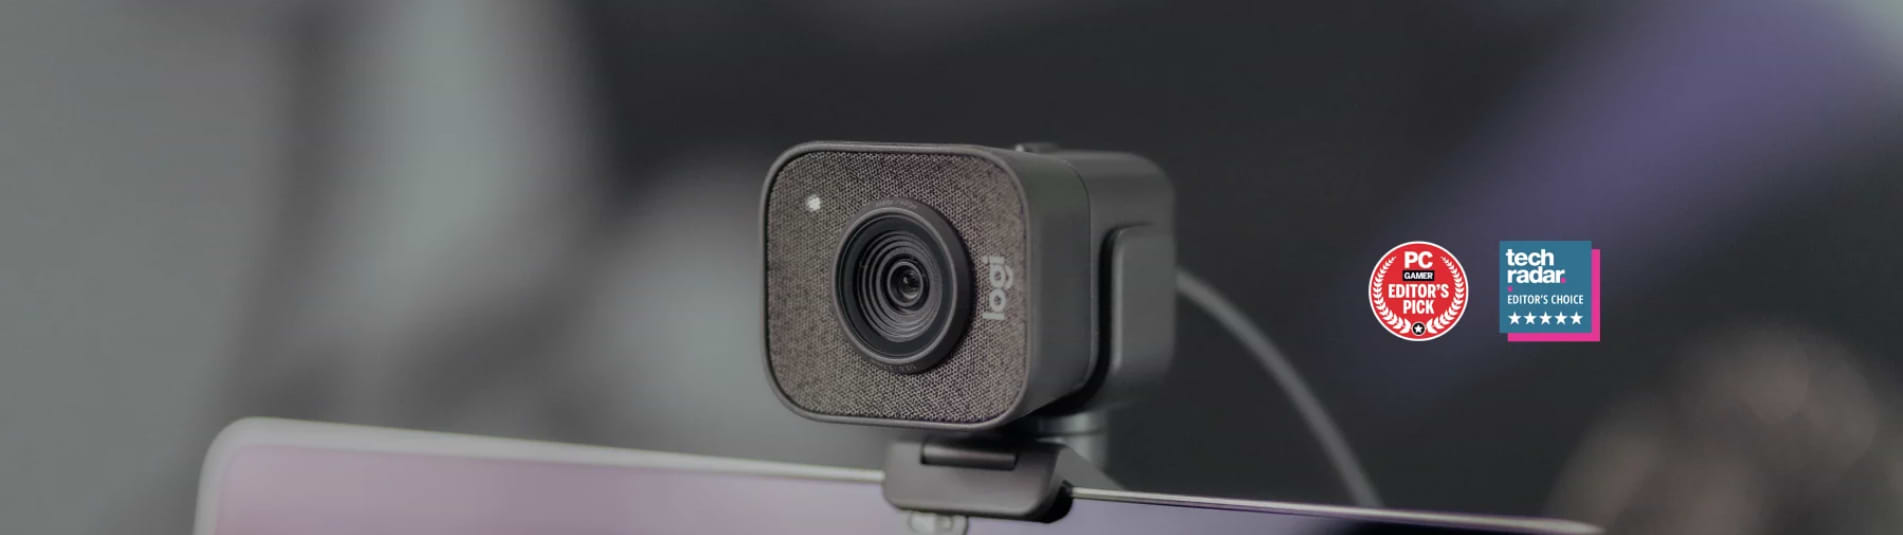 מצלמת רשת Logitech Streamcam - צבע שחור שנתיים אחרריות ע"י היבואן הרשמי